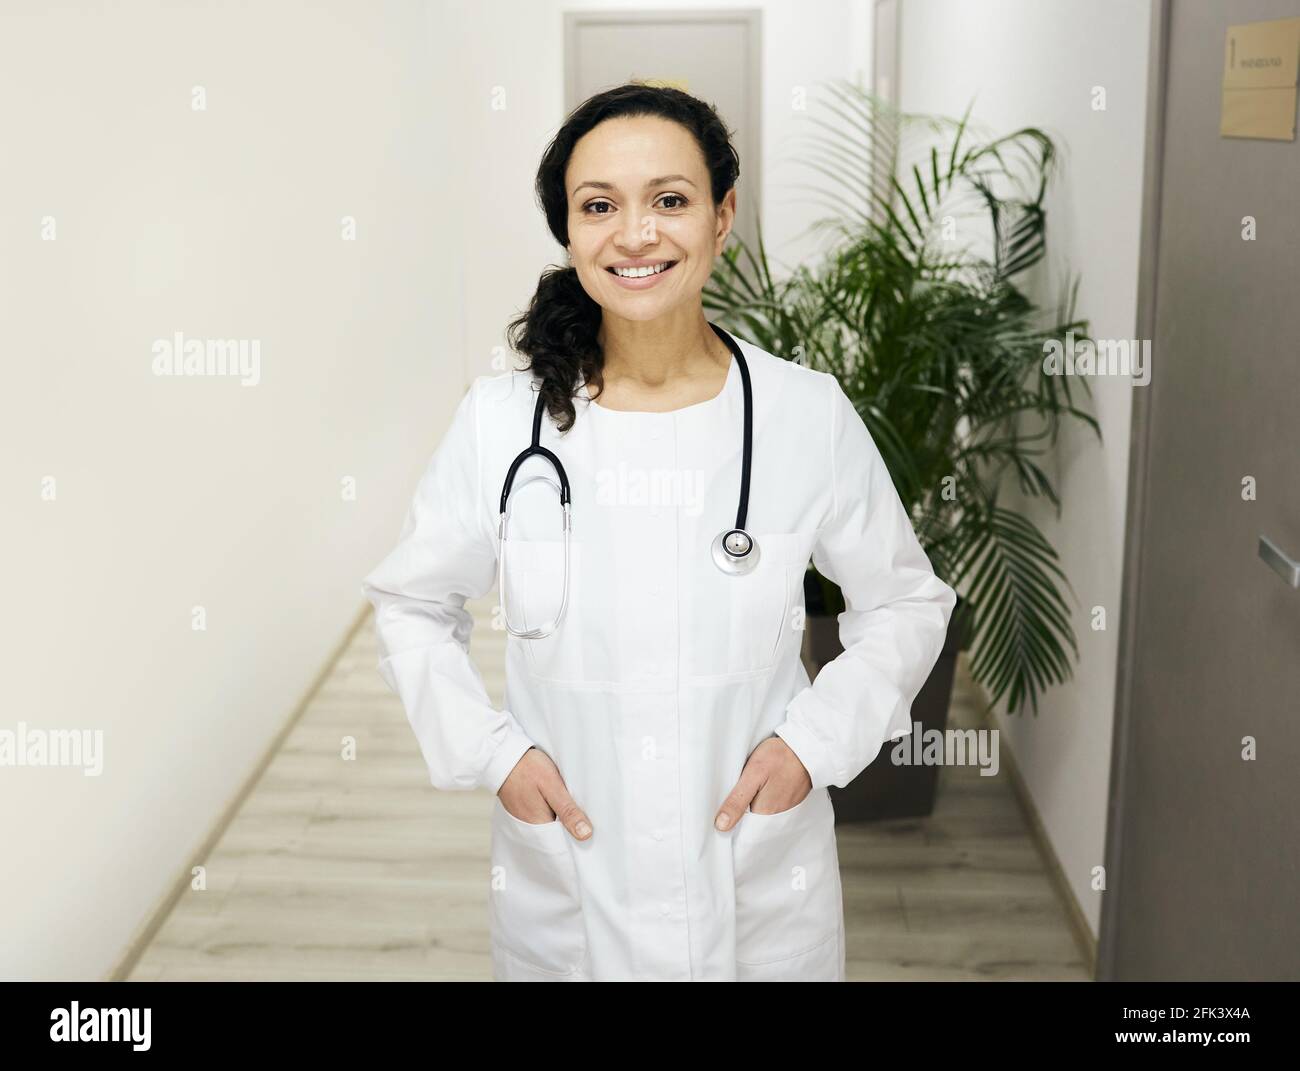 Allgemeinmediziner. In einem Krankenhausflur steht eine lächelnde Ärztin mit gemischter Rasse, die eine medizinische Uniform mit einem Stethoskop trägt Stockfoto